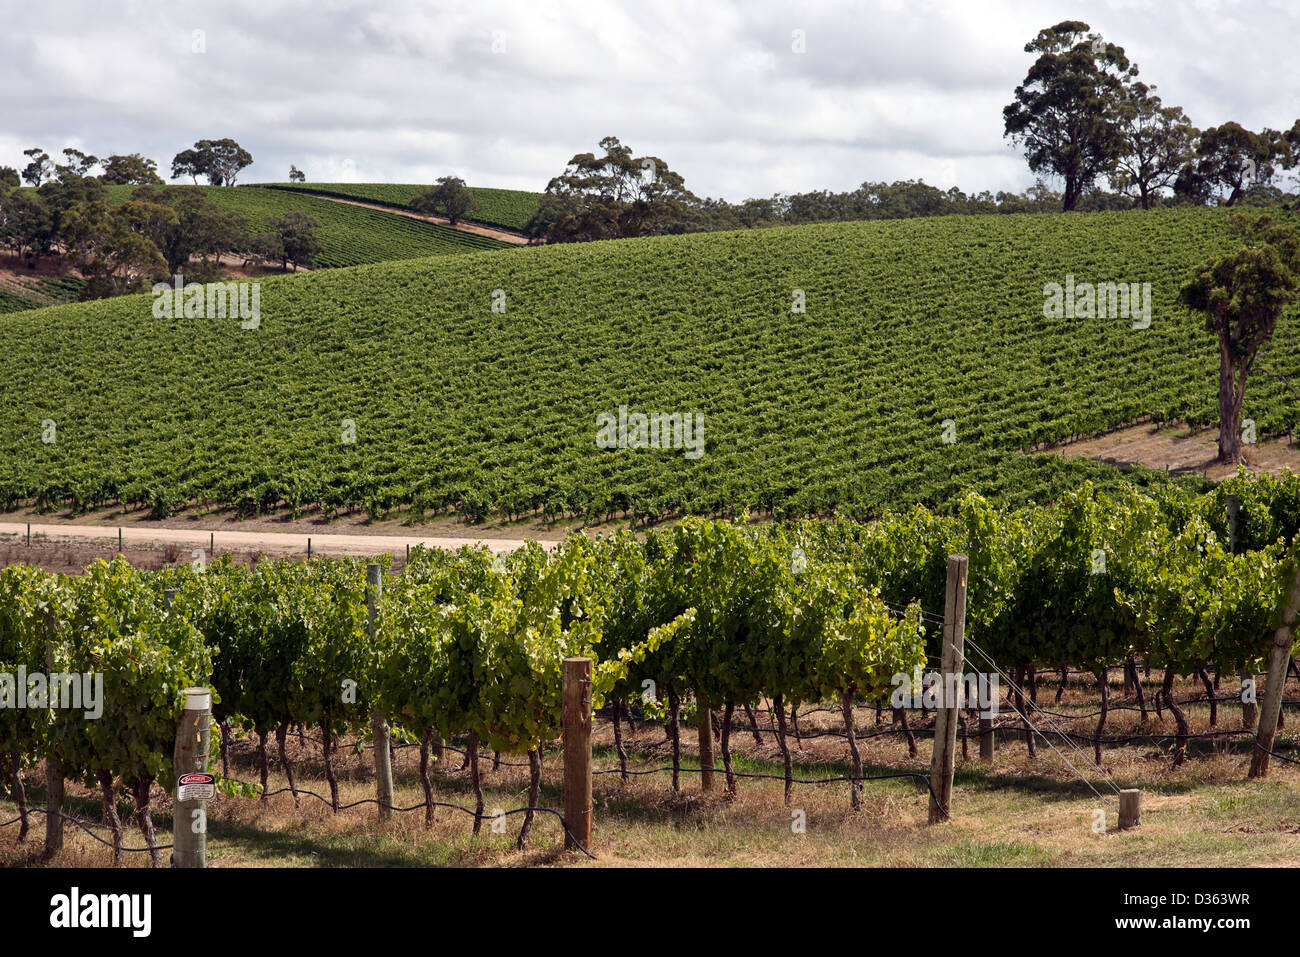 Ein Weinberg unter strahlend blauem Himmel in Sonnenlicht getaucht. Die Reihen der Weinstöcke konvergieren in der Ferne. Stockfoto